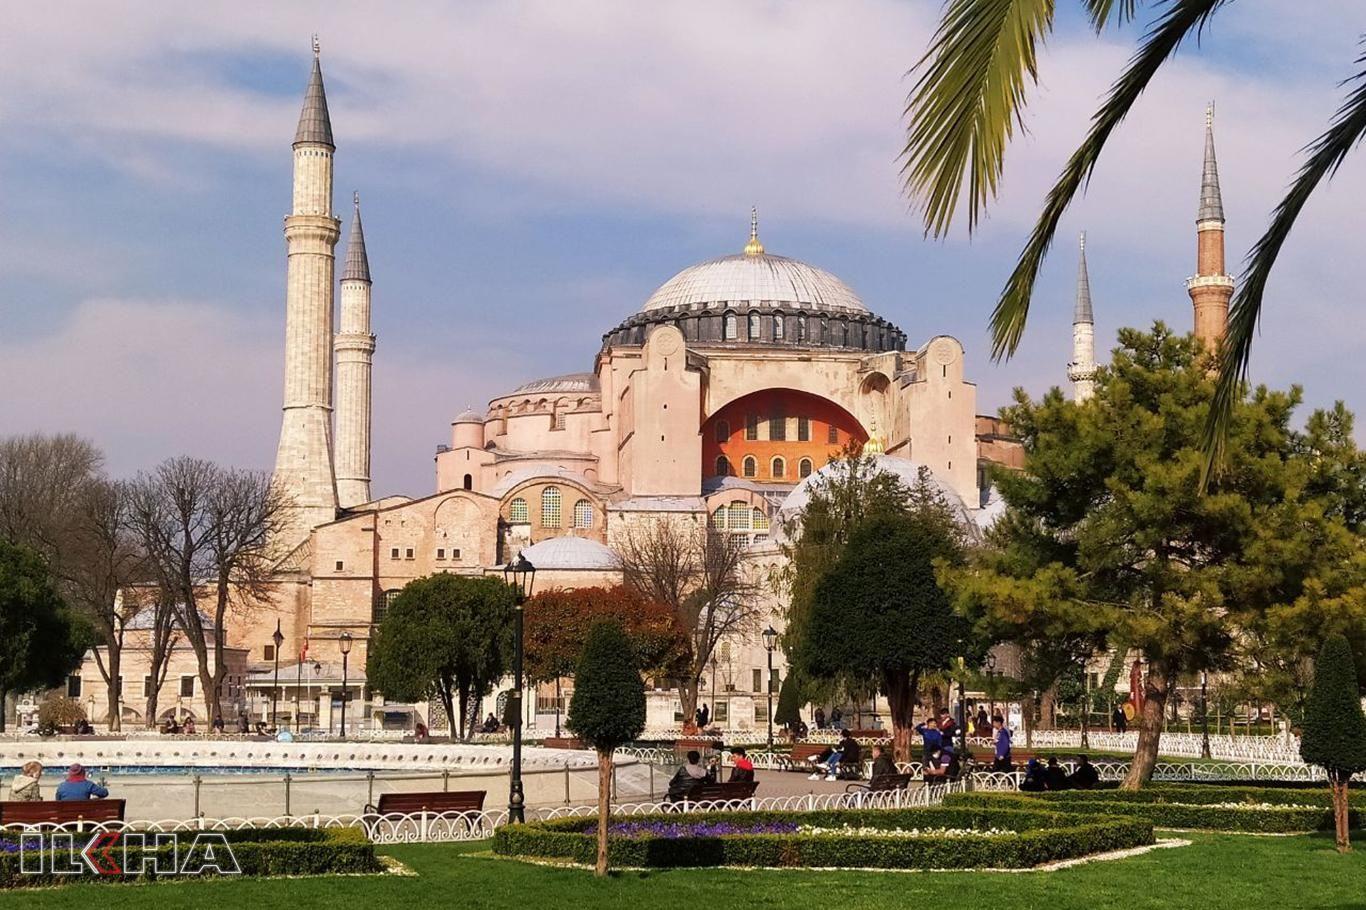 تسليم إدارة جامع "آيا صوفيا" إلى الشؤون الدينية التركية